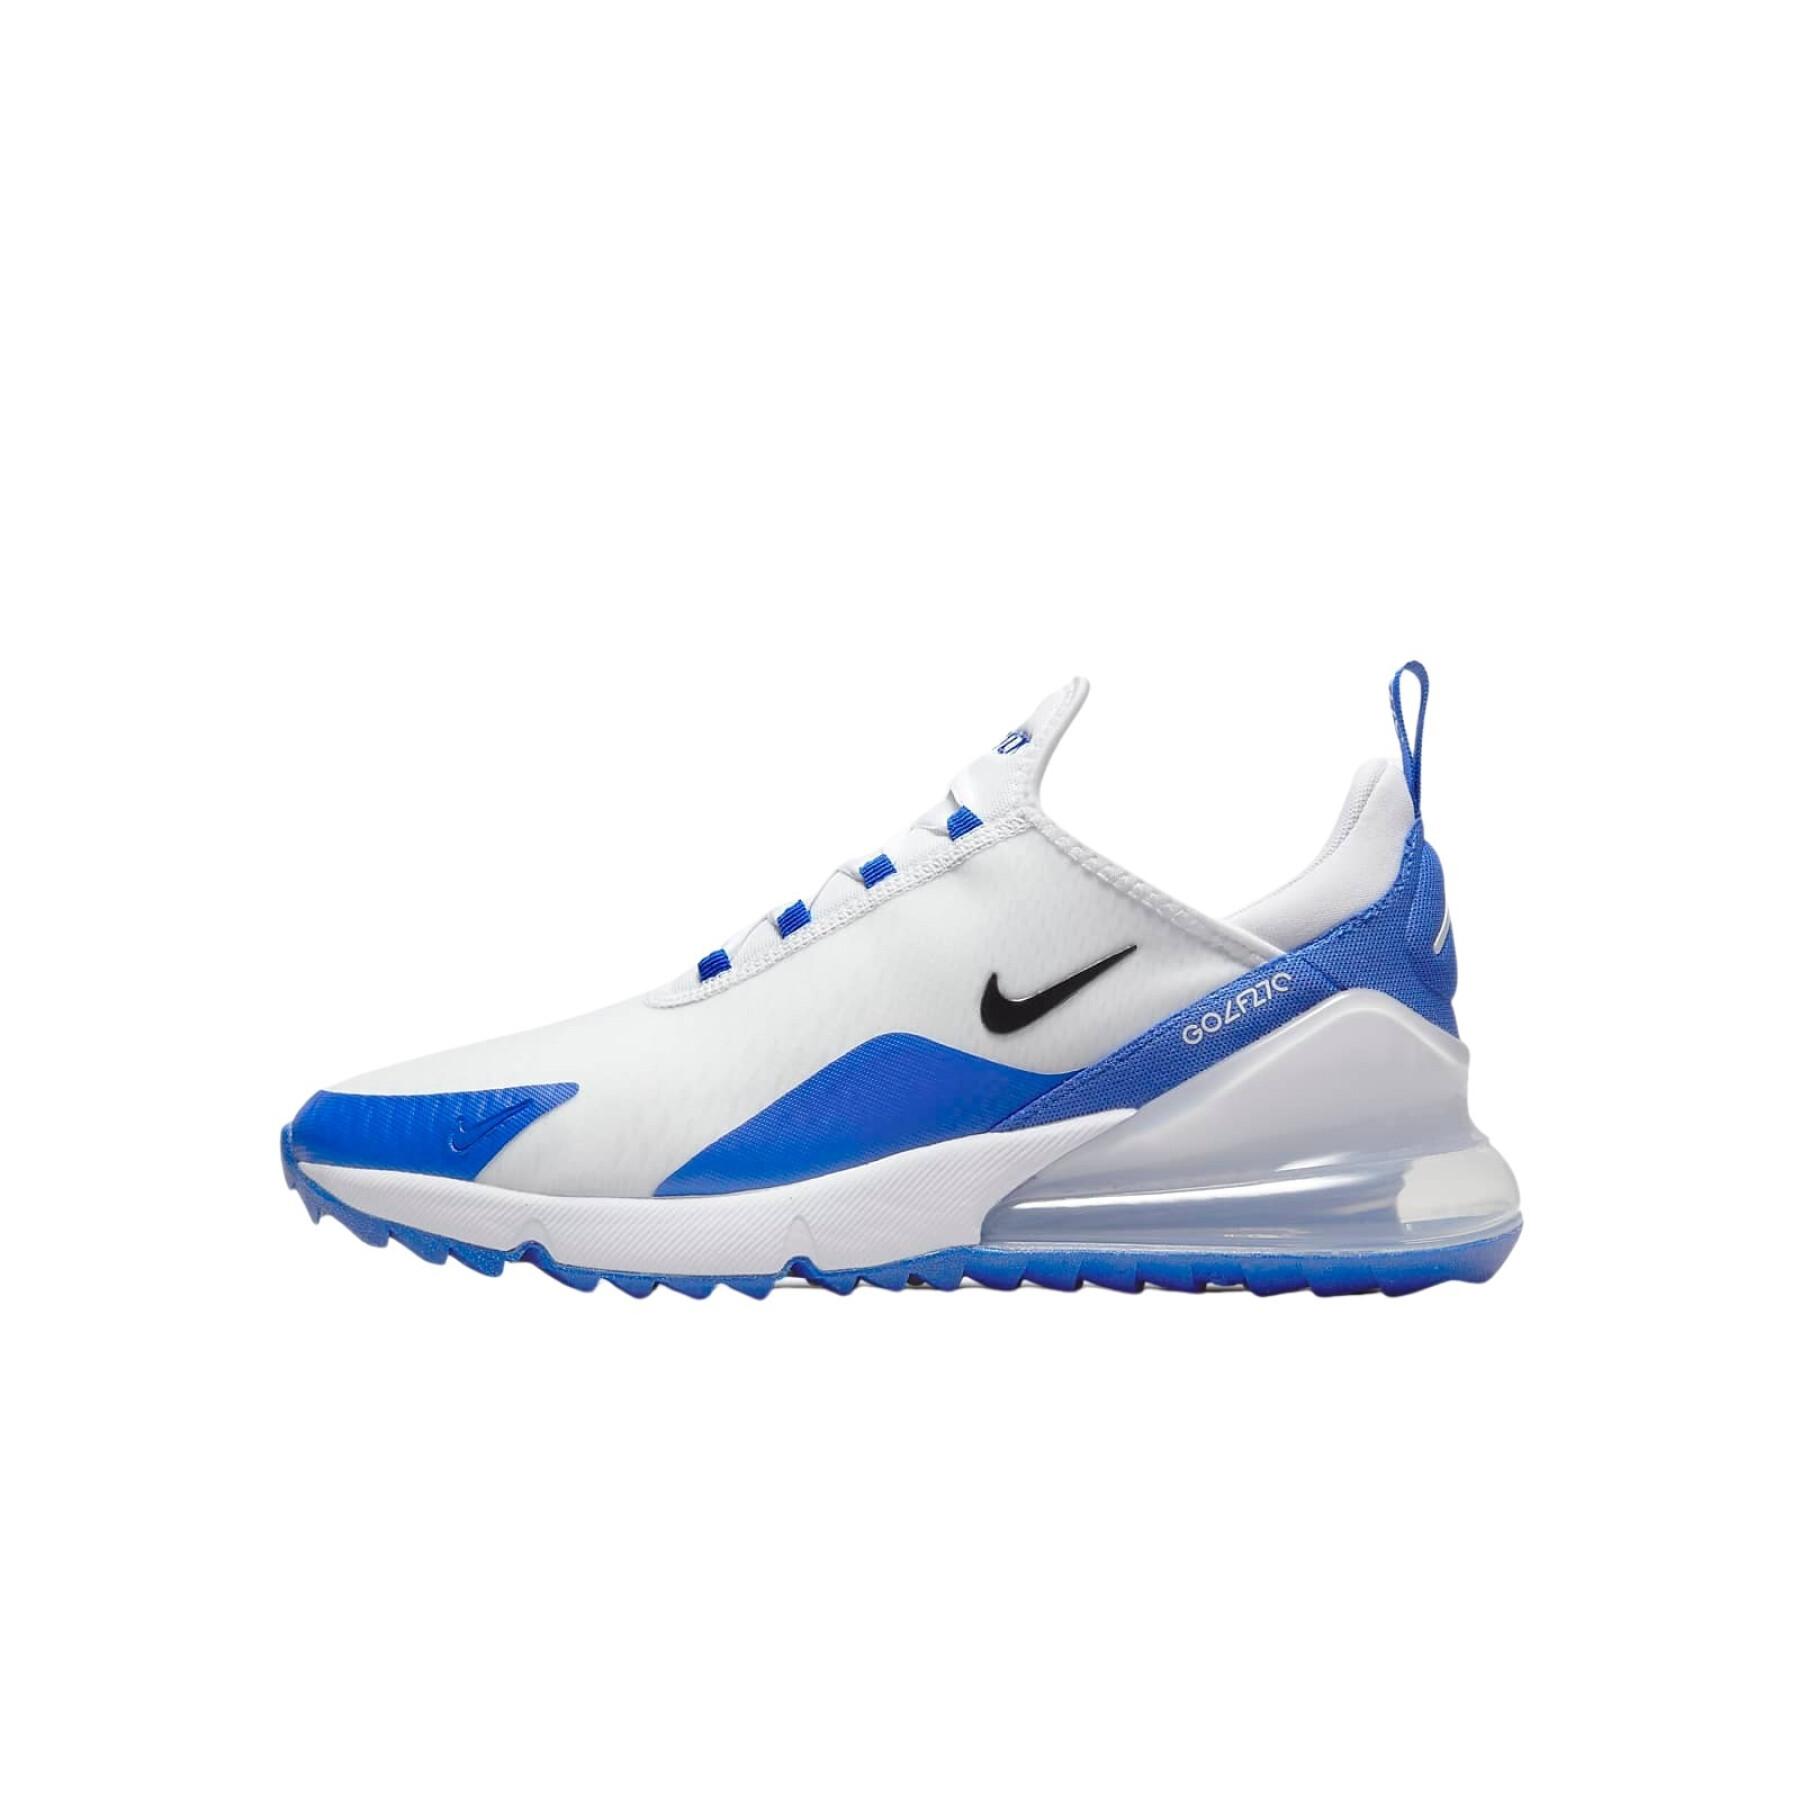 Chaussures de golf Nike Air Max 270 G